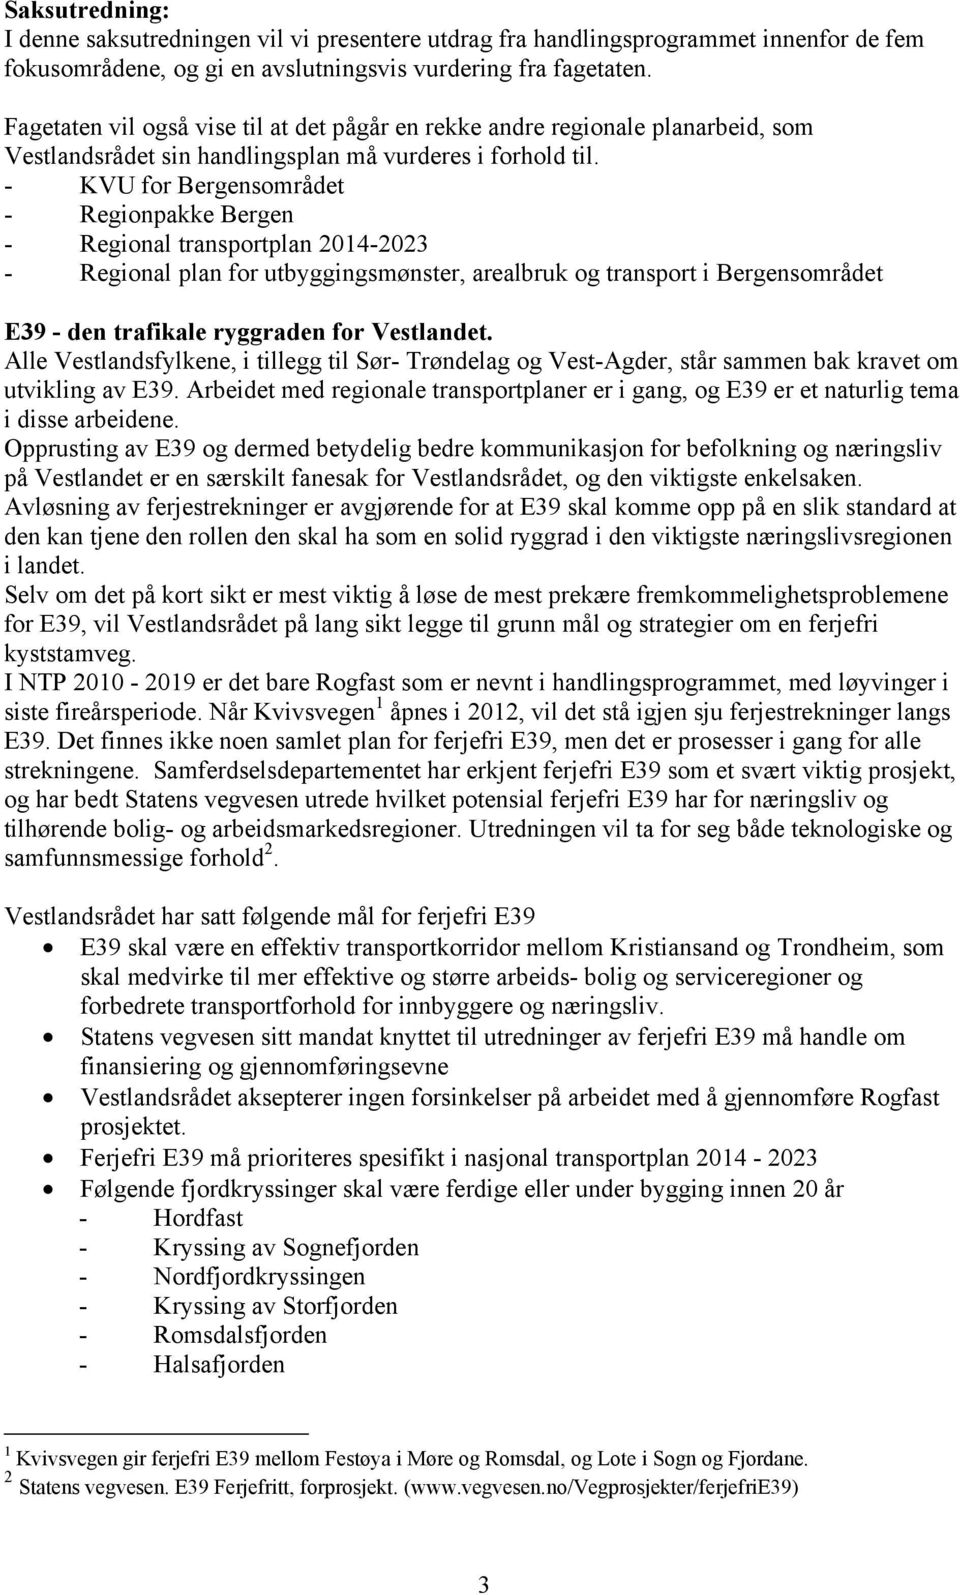 - KVU for Bergensområdet - Regionpakke Bergen - Regional transportplan 2014-2023 - Regional plan for utbyggingsmønster, arealbruk og transport i Bergensområdet E39 - den trafikale ryggraden for